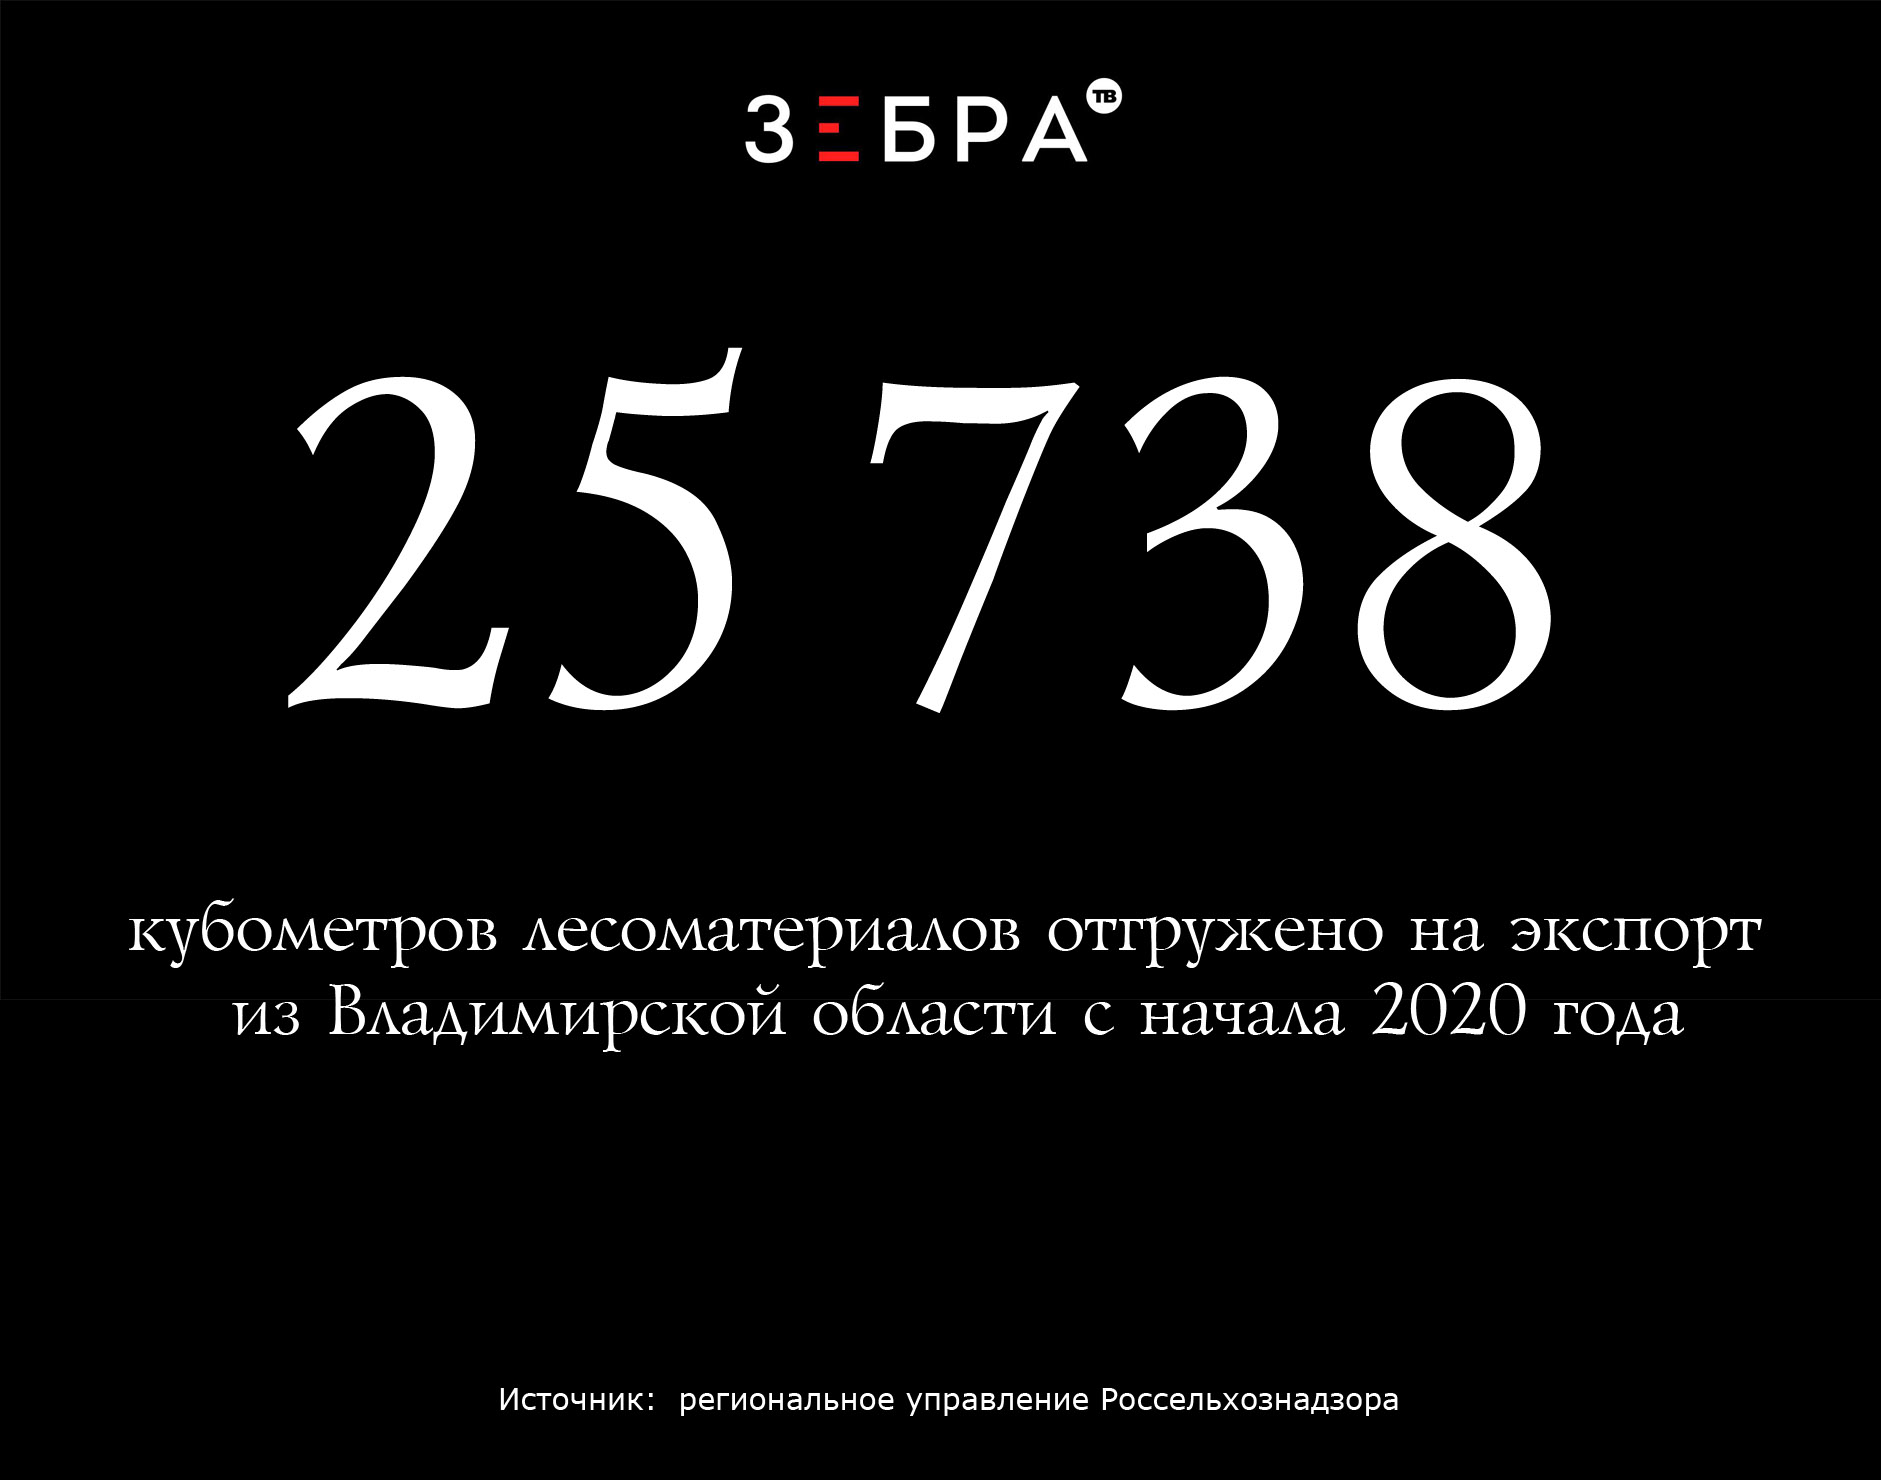 25,738 тысячи кубометров лесоматериалов отгружено на экспорт из Владимирской области с начала 2020 года. Источник: региональное управление Россельхознадзора